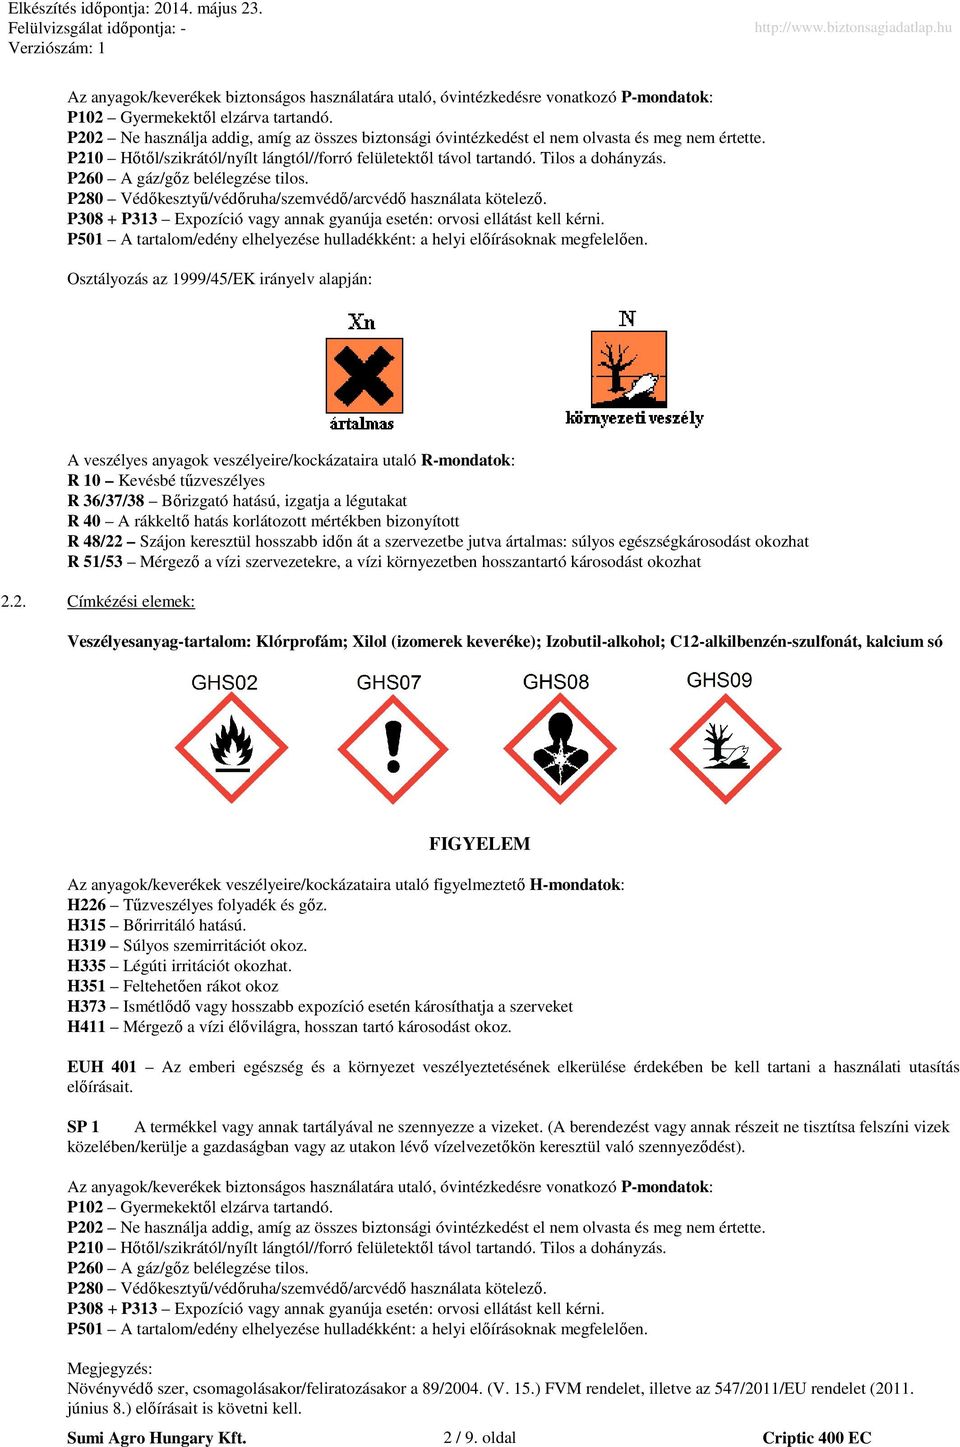 P260 A gáz/gőz belélegzése tilos. P280 Védőkesztyű/védőruha/szemvédő/arcvédő használata kötelező. P308 + P313 Expozíció vagy annak gyanúja esetén: orvosi ellátást kell kérni.